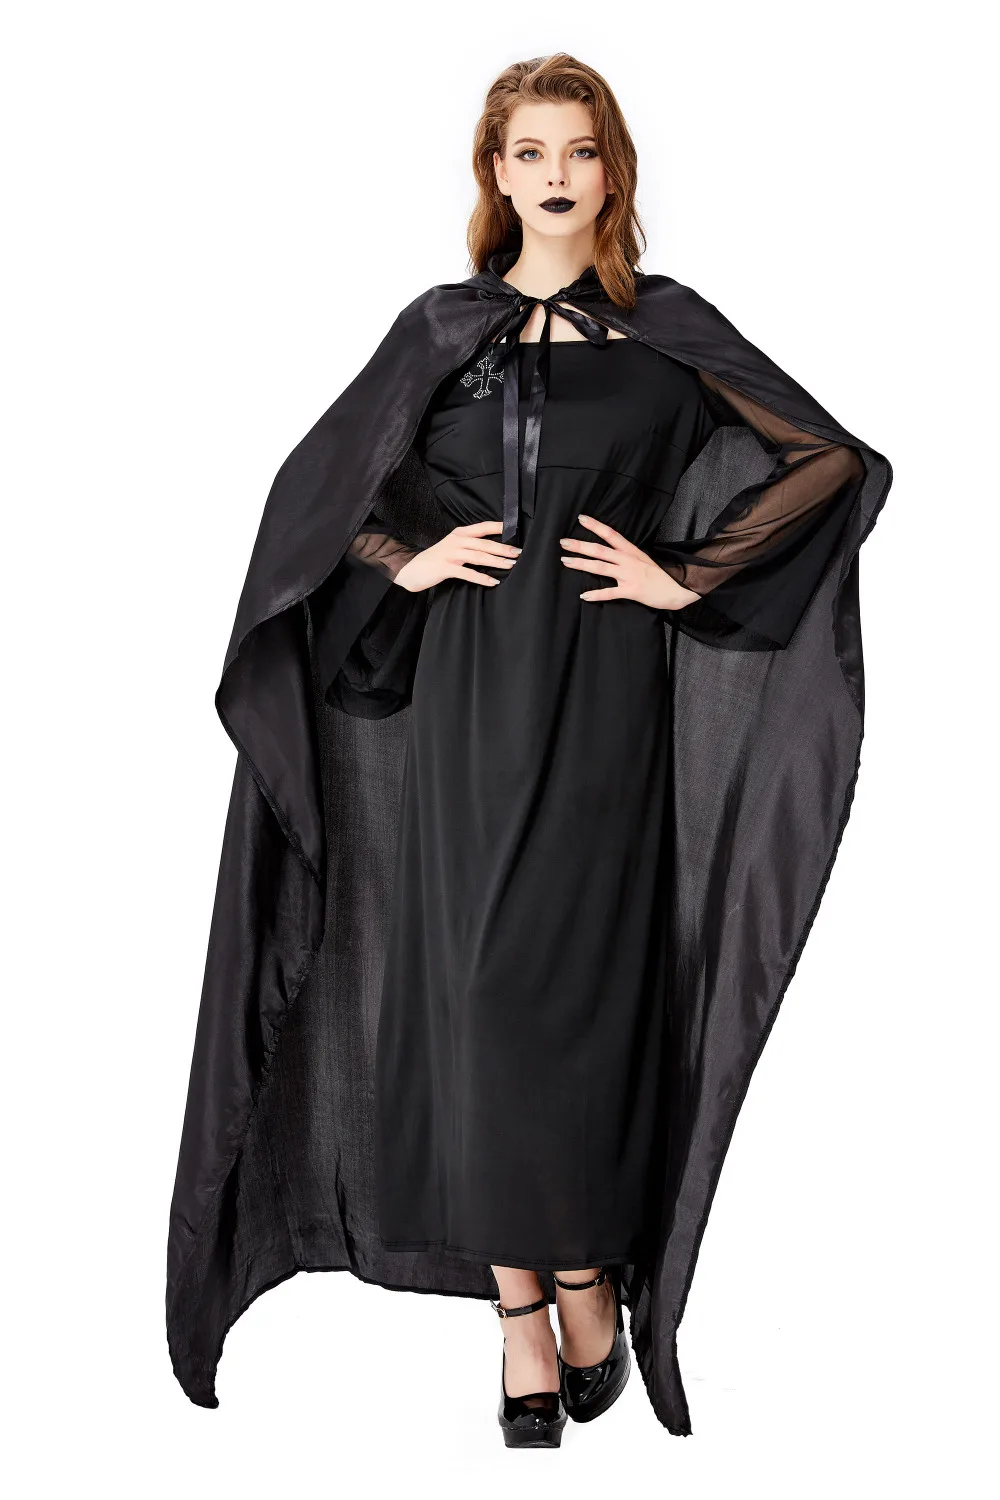 Роскошный готический костюм ведьмы для костюм для взрослых женщин на Хеллоуин карнавал мертвая ведьма ролевая игра косплей женский маскарадный костюм